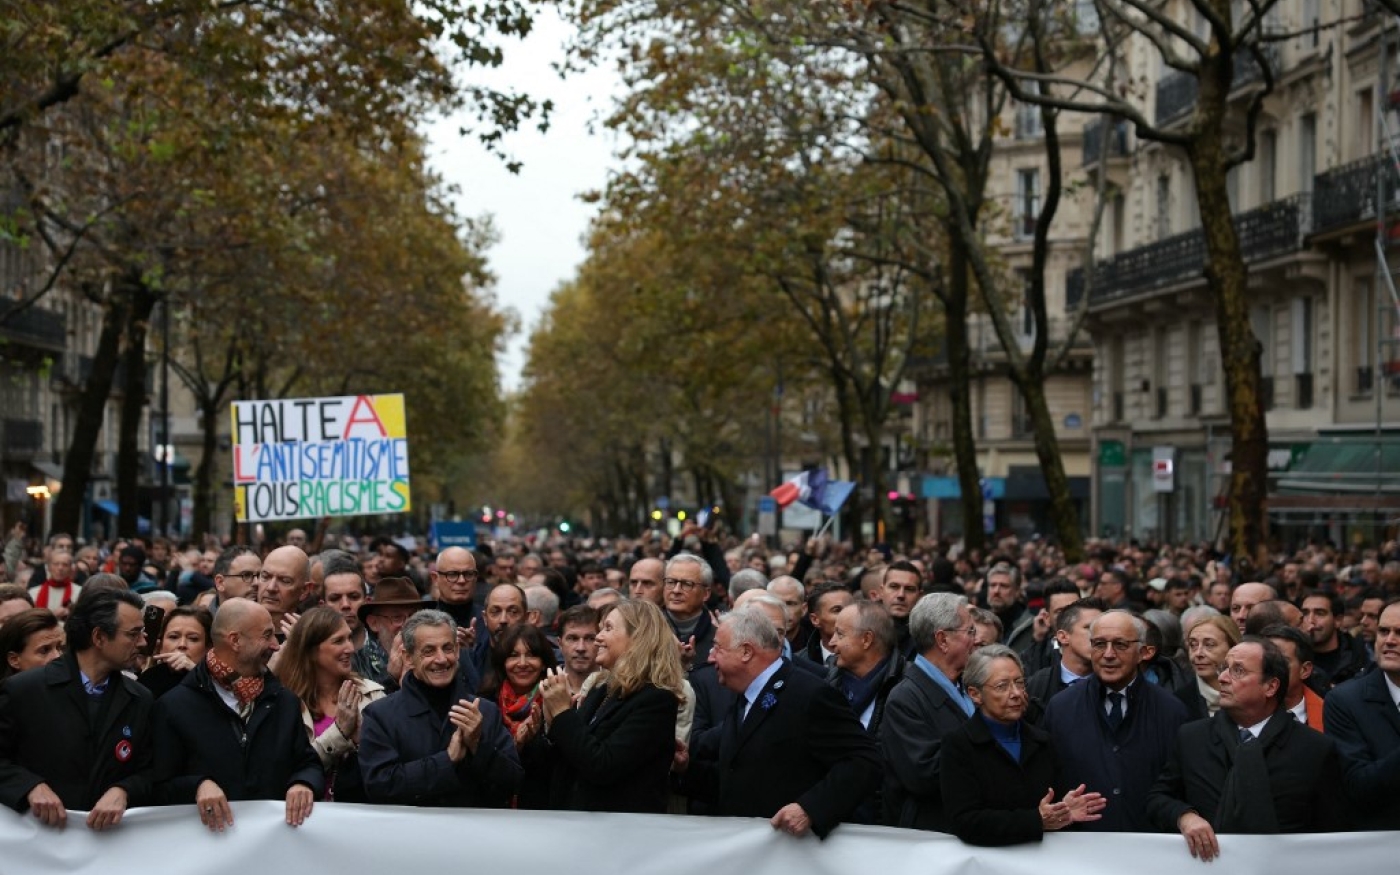 Le président du Sénat français Gérard Larcher (5e à gauche), la présidente de l’Assemblée nationale Yaël Braun-Pivet (4e à gauche), entourés de la Première ministre Élisabeth Borne (2e à droite), des anciens présidents Nicolas Sarkozy (3e à gauche) et François Hollande (à droite), applaudissent après avoir chanté l’hymne national lors de la marche contre l’antisémitisme, le 12 novembre 2023 à Paris (AFP/Thomas Samson)